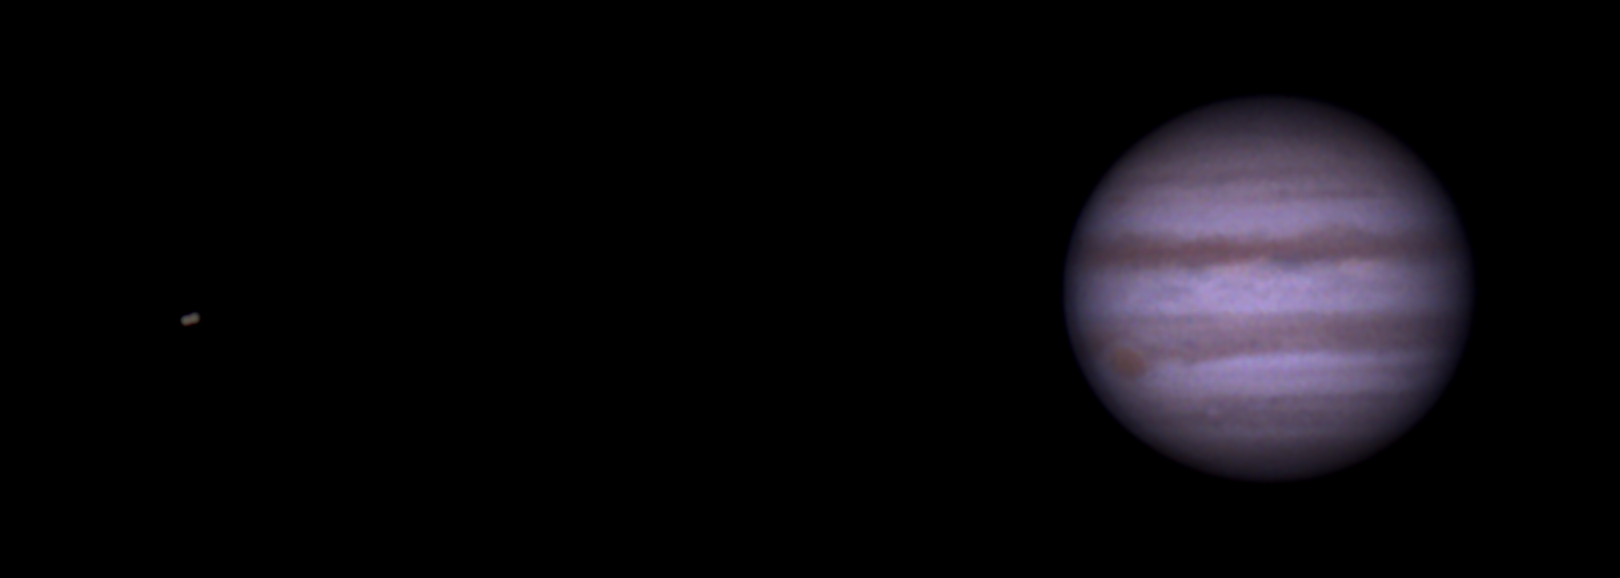 Bedeckung von Io und Europa am 11.März 2015